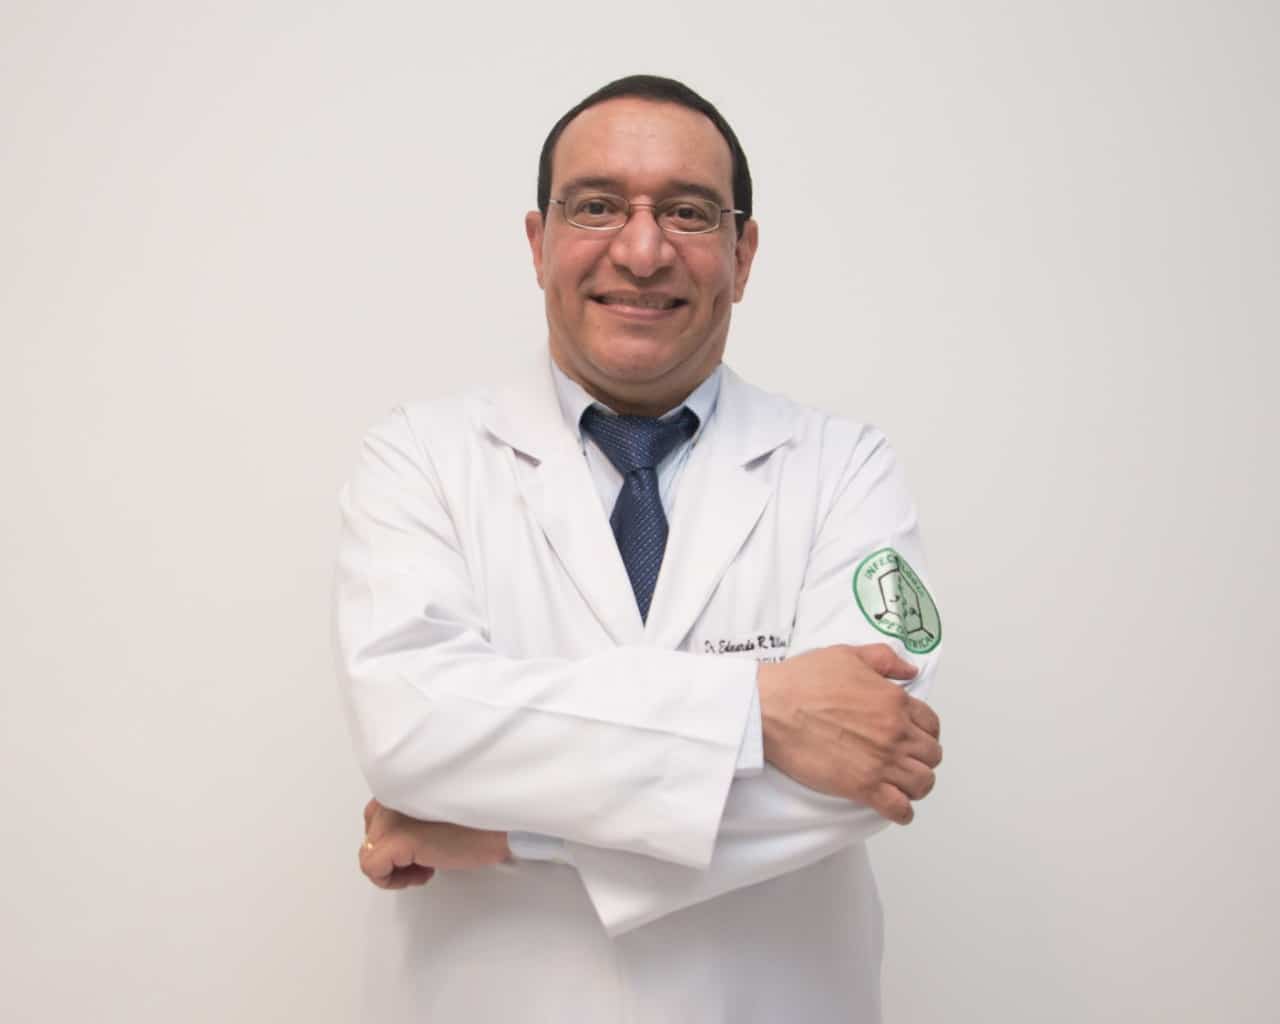 Dr. Eduardo Ulloa